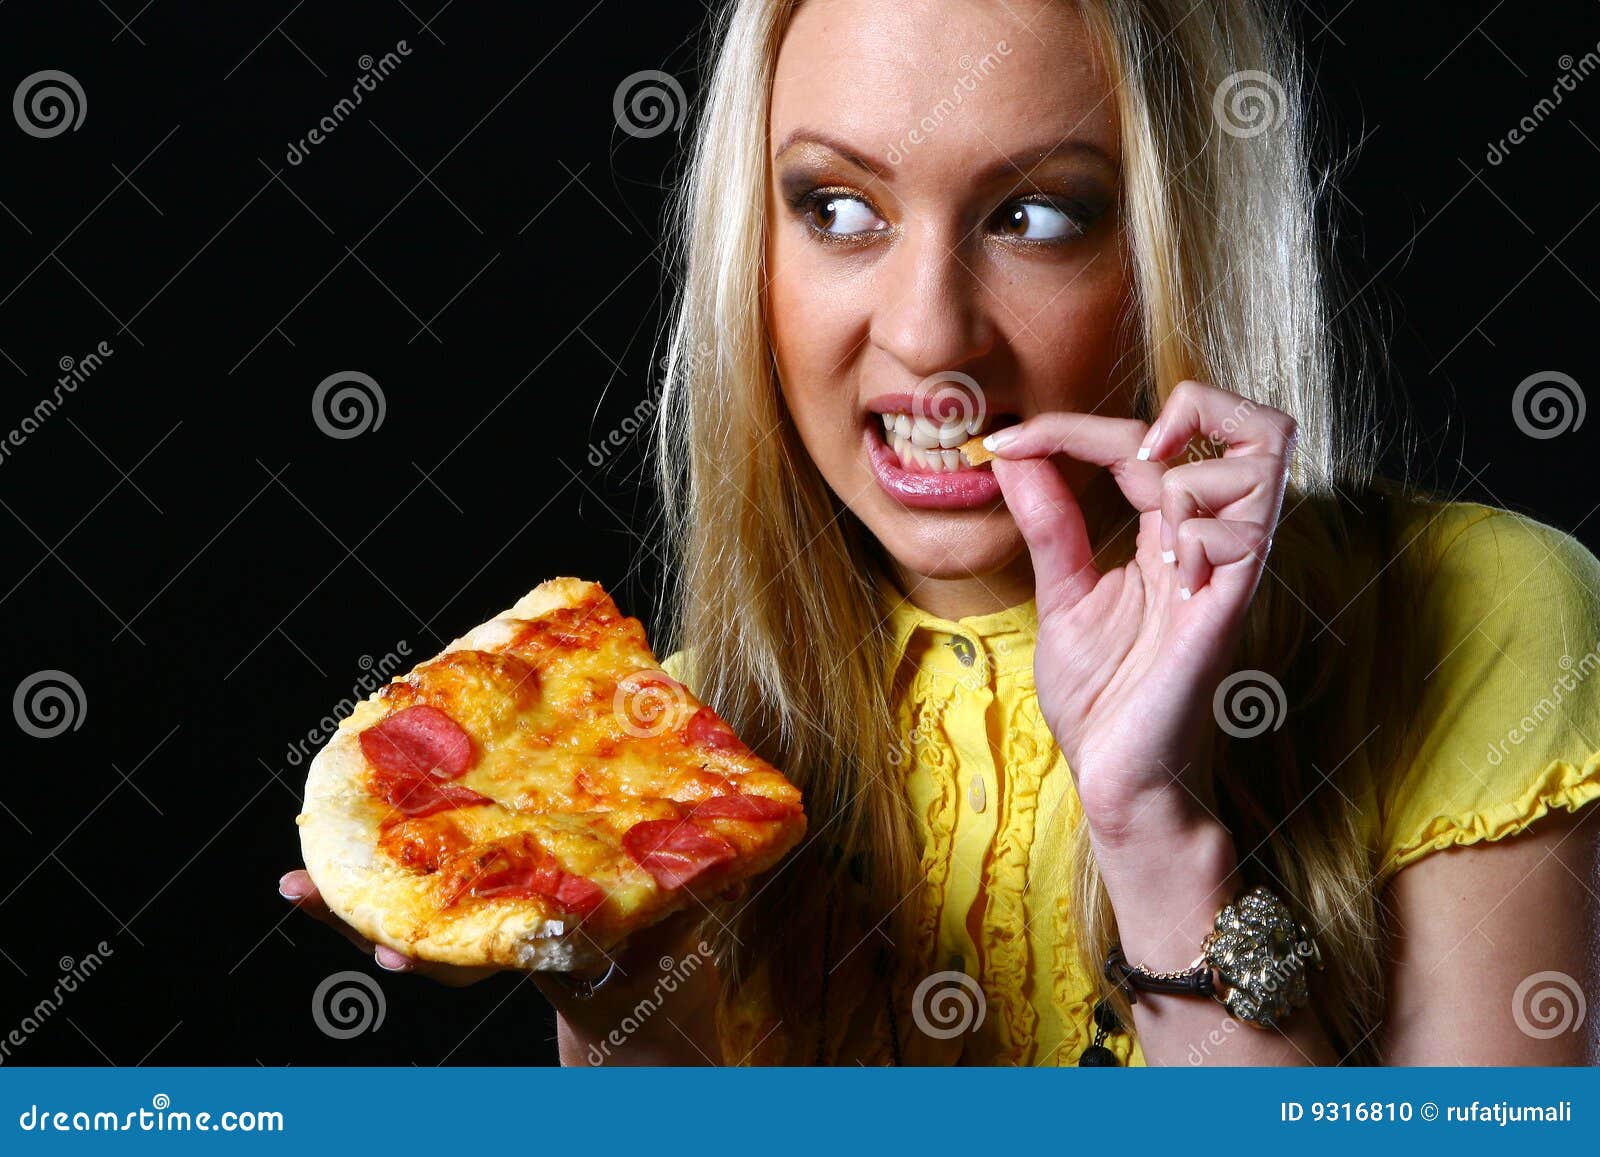 фотошоп из девушки пицца фото 7